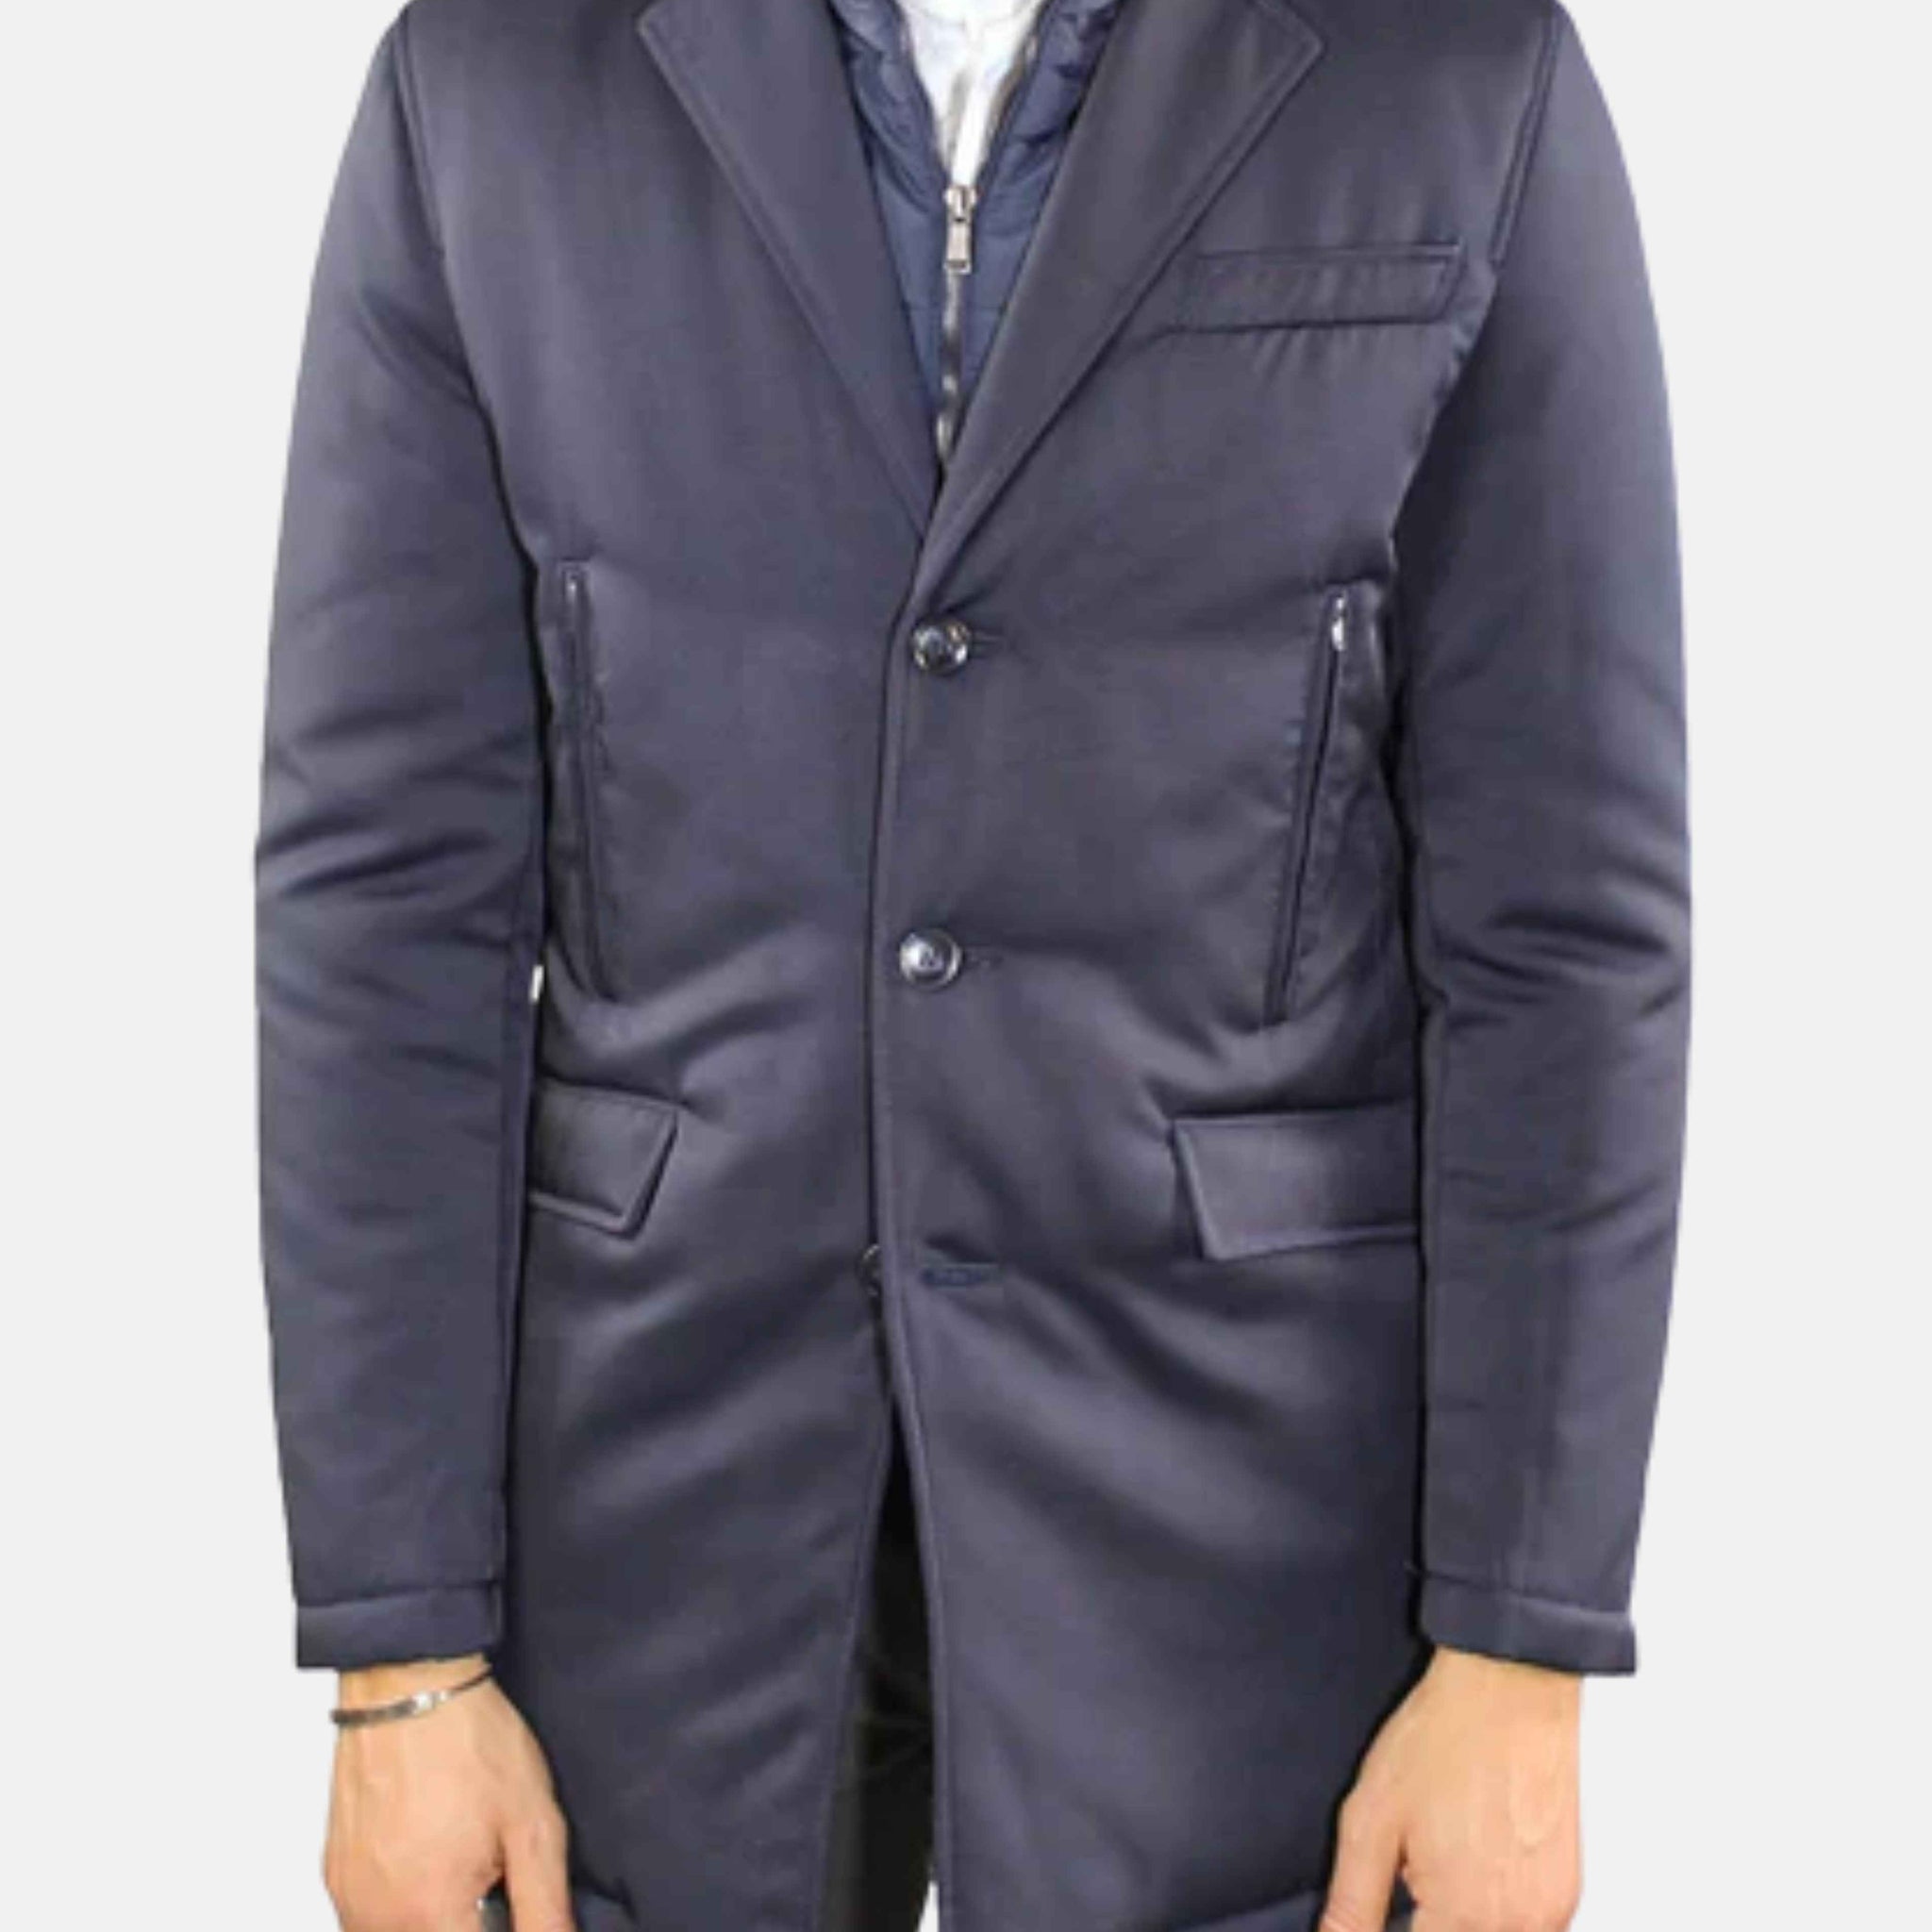 Elegant blue waterproof jacket